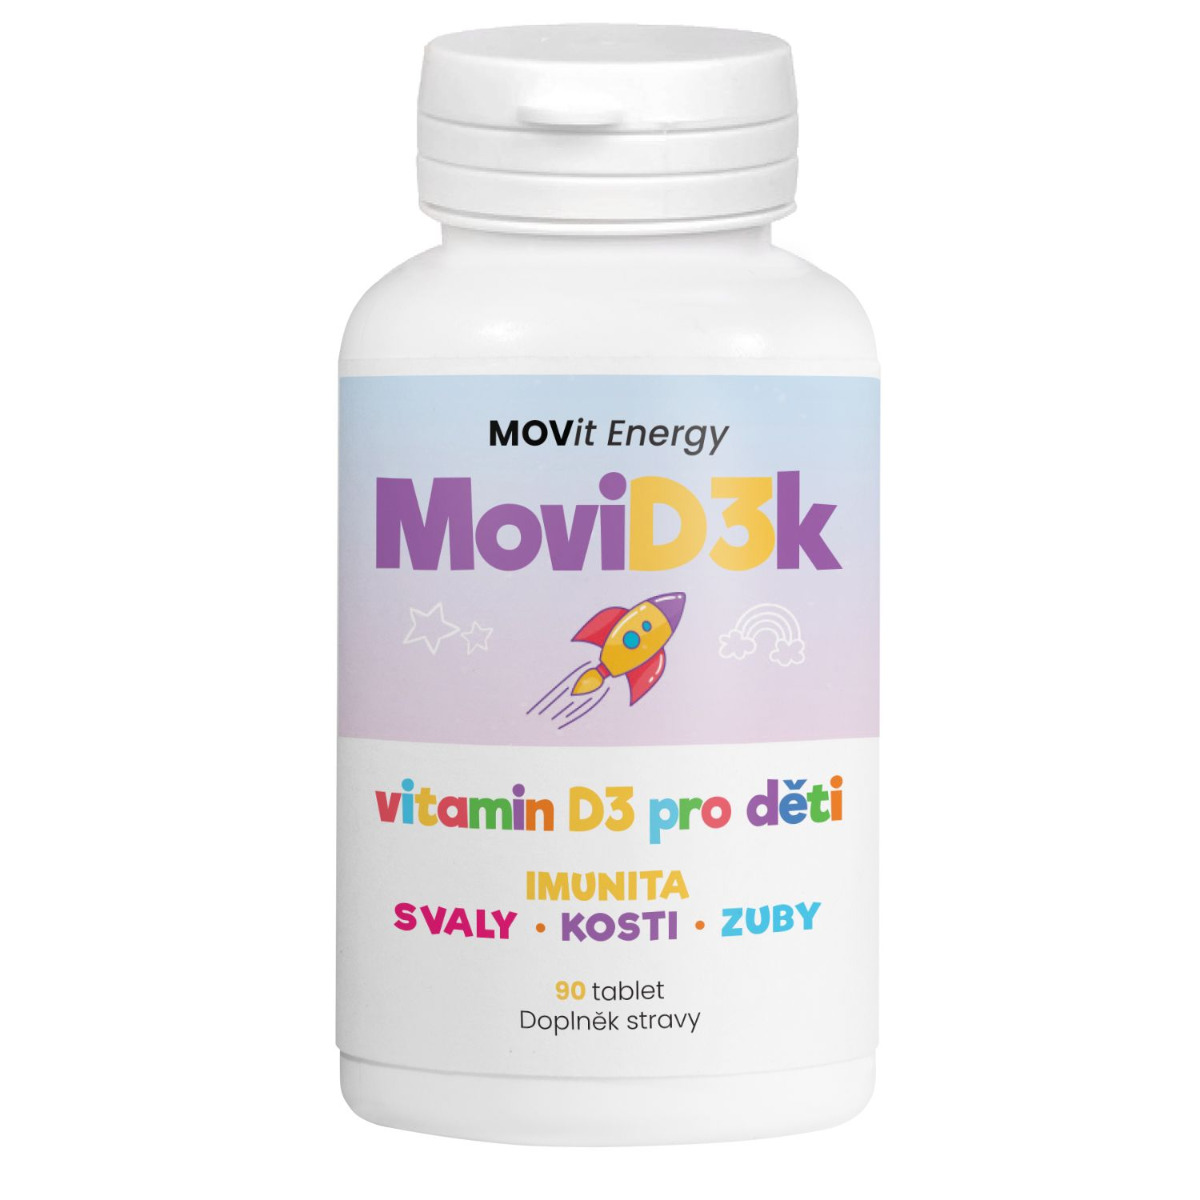 MOVit Energy MoviD3k vitamin D3 pro děti 800 I.U. 90 tablet MOVit Energy